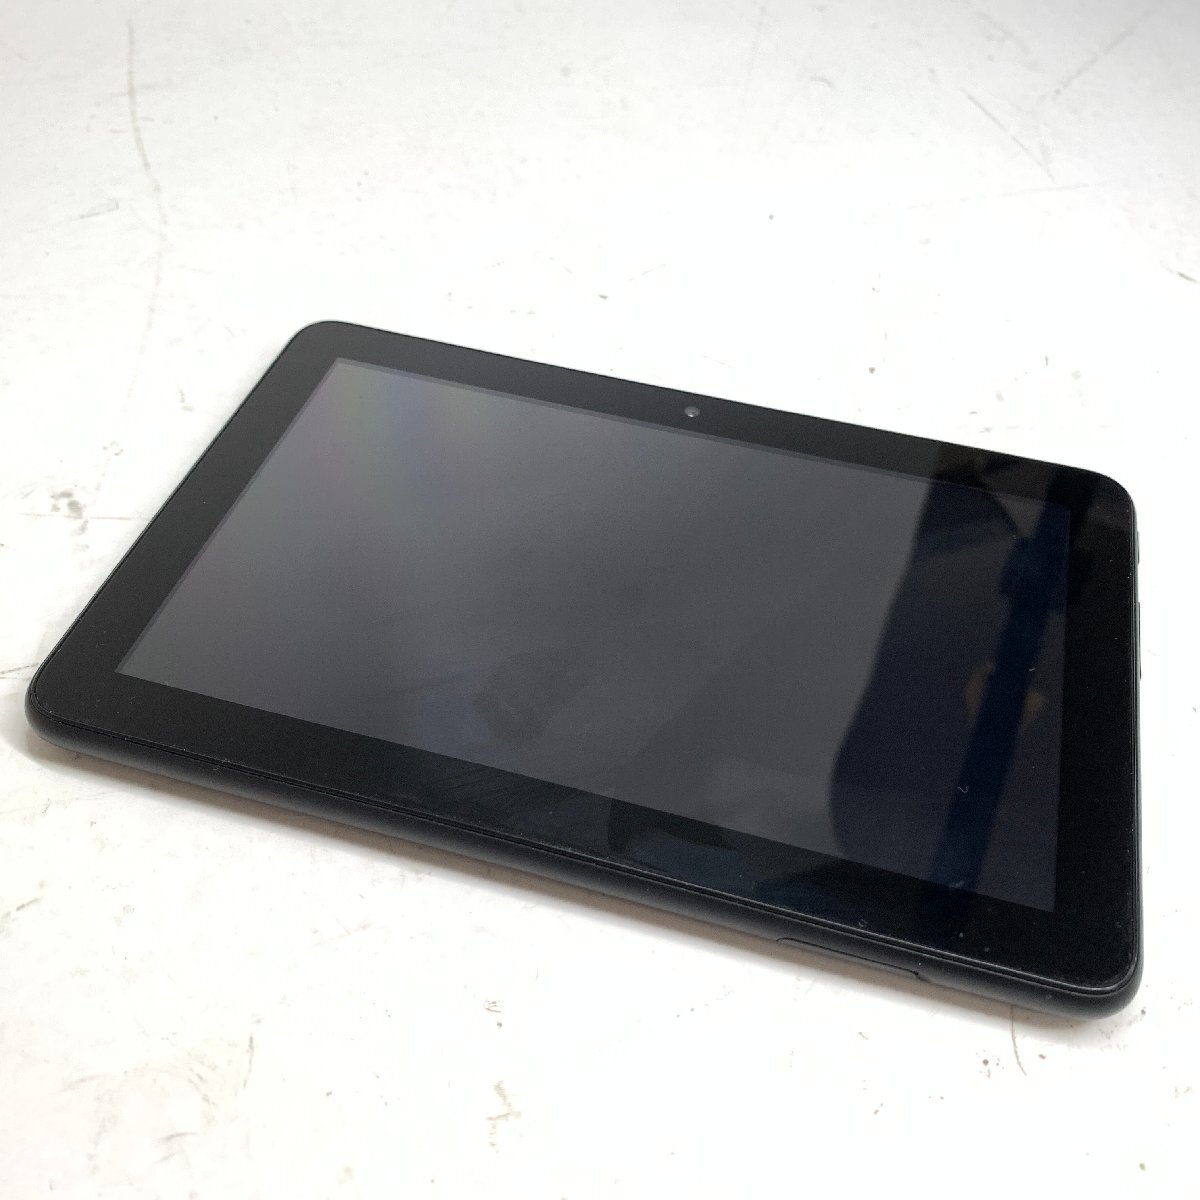 f001 B Amazon Fire 7 タブレット 第12世代 7インチディスプレイ 16GB ブラック_画像4